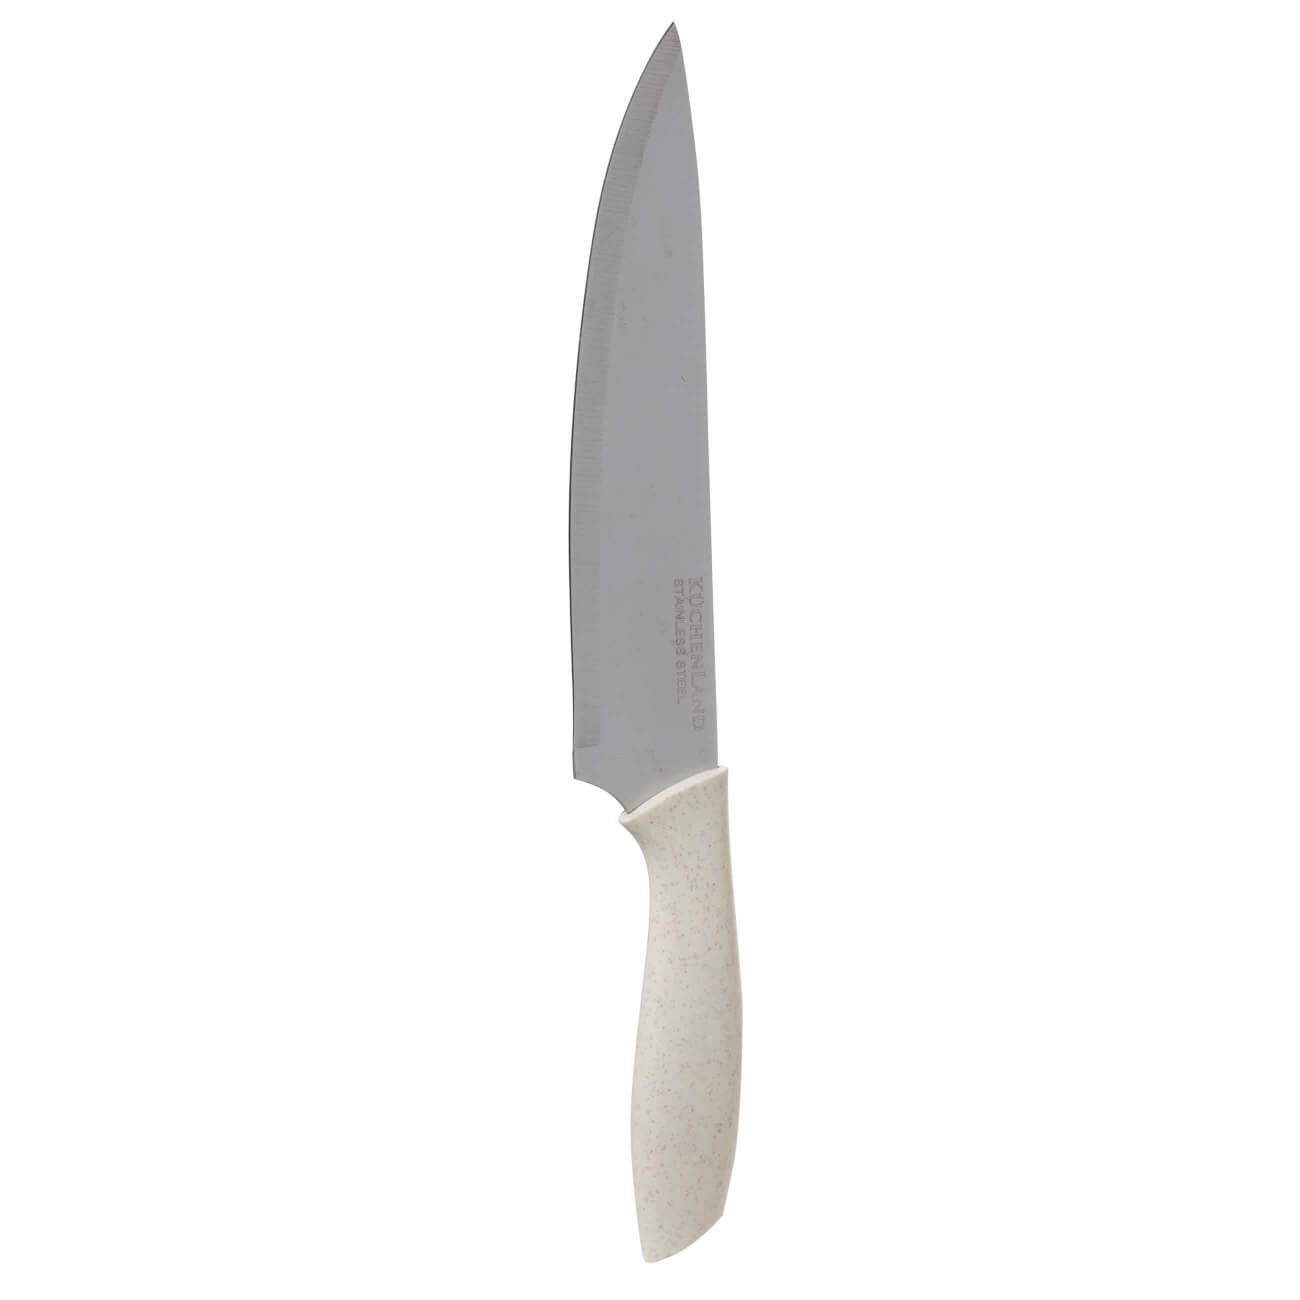 Нож поварской, 20 см, сталь/пластик, молочный, Speck-light нож для нарезки 15 см сталь пластик молочный speck light